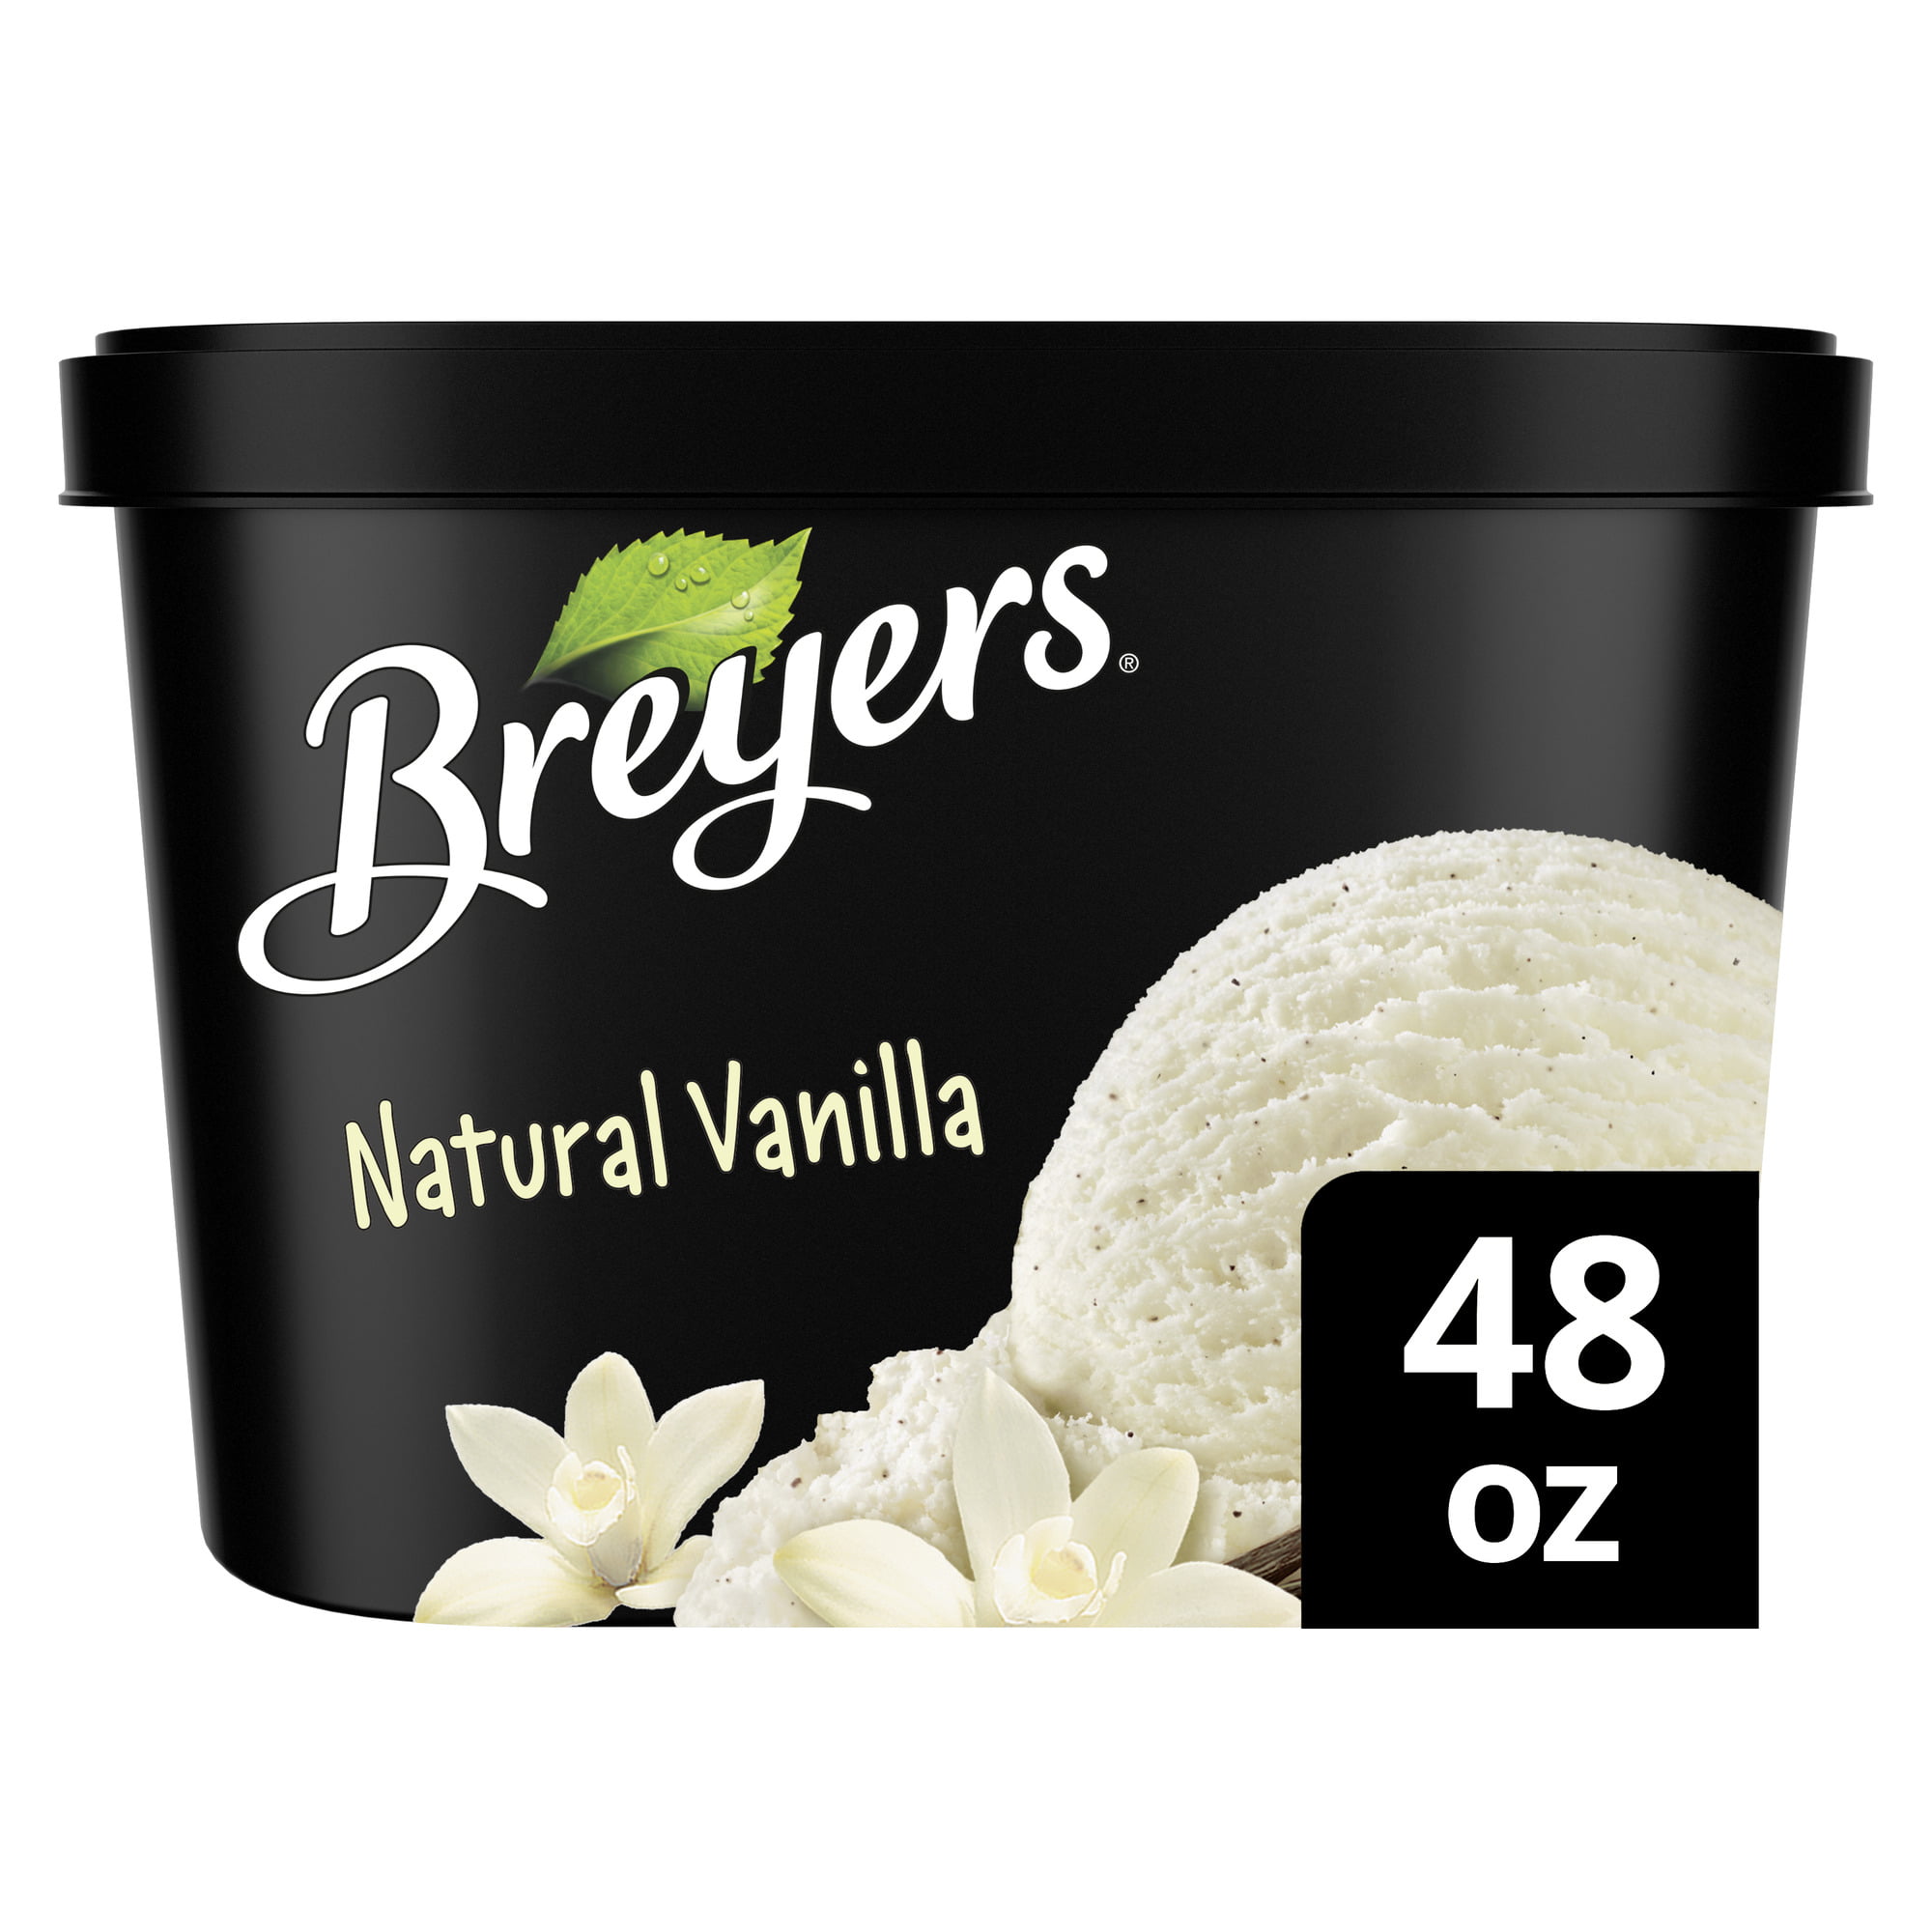 Breyers Natural Vanilla Ice Cream Gluten-Free Kosher Dairy Milk, 1.5 Quart - image 3 of 12